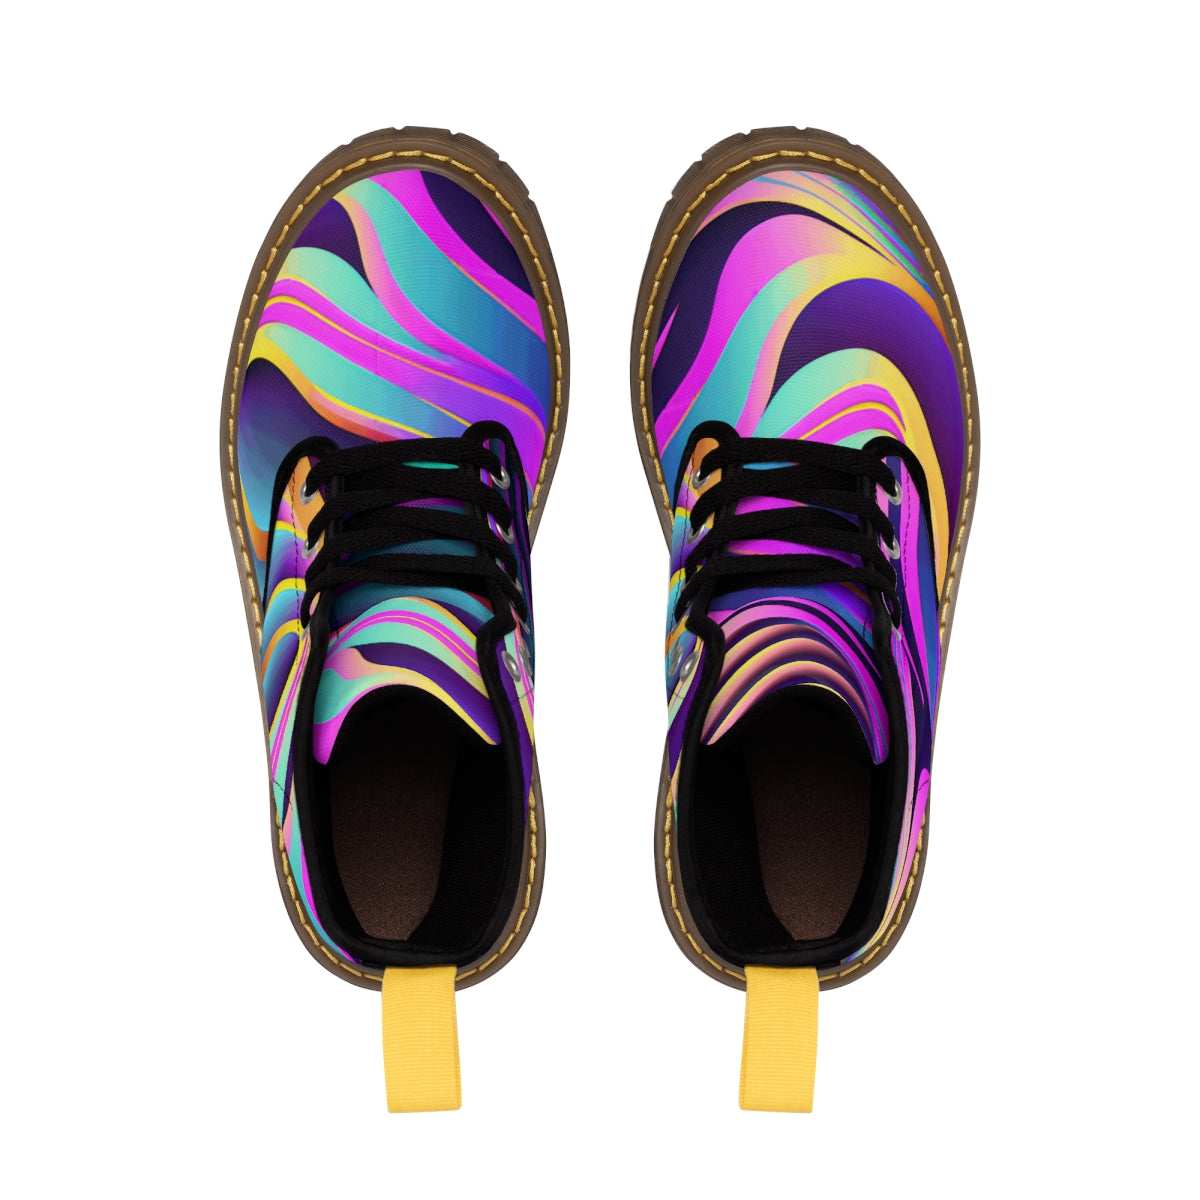 Holographic Zebra Motif - Women's Canvas Boots